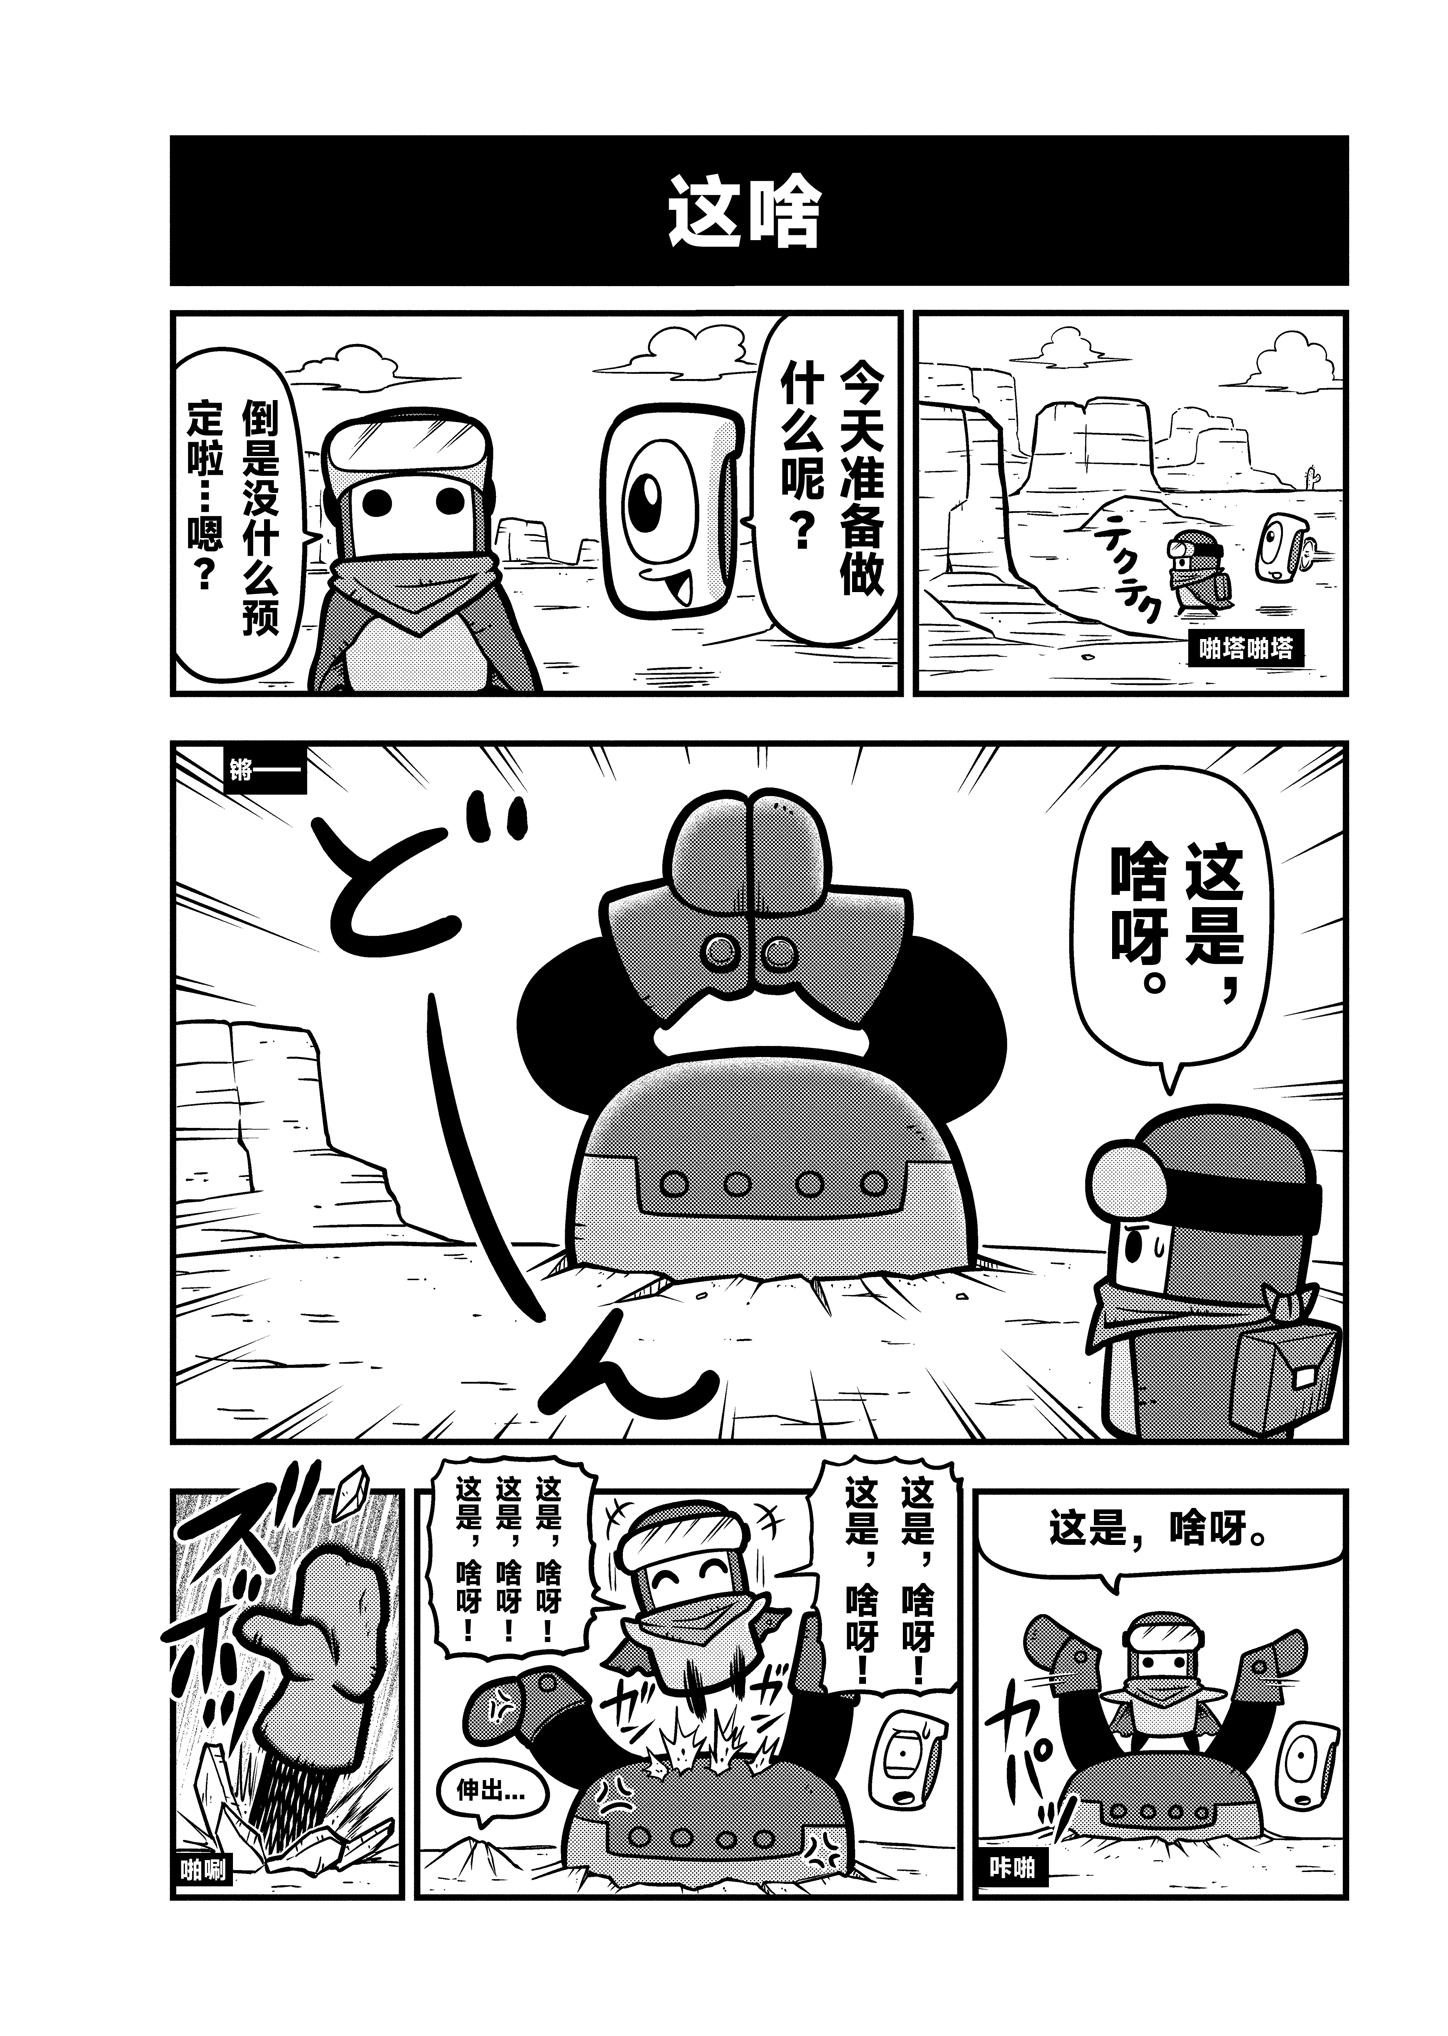 《弹壳特攻队》漫画第17话：强敌出没，大钢牙登场！